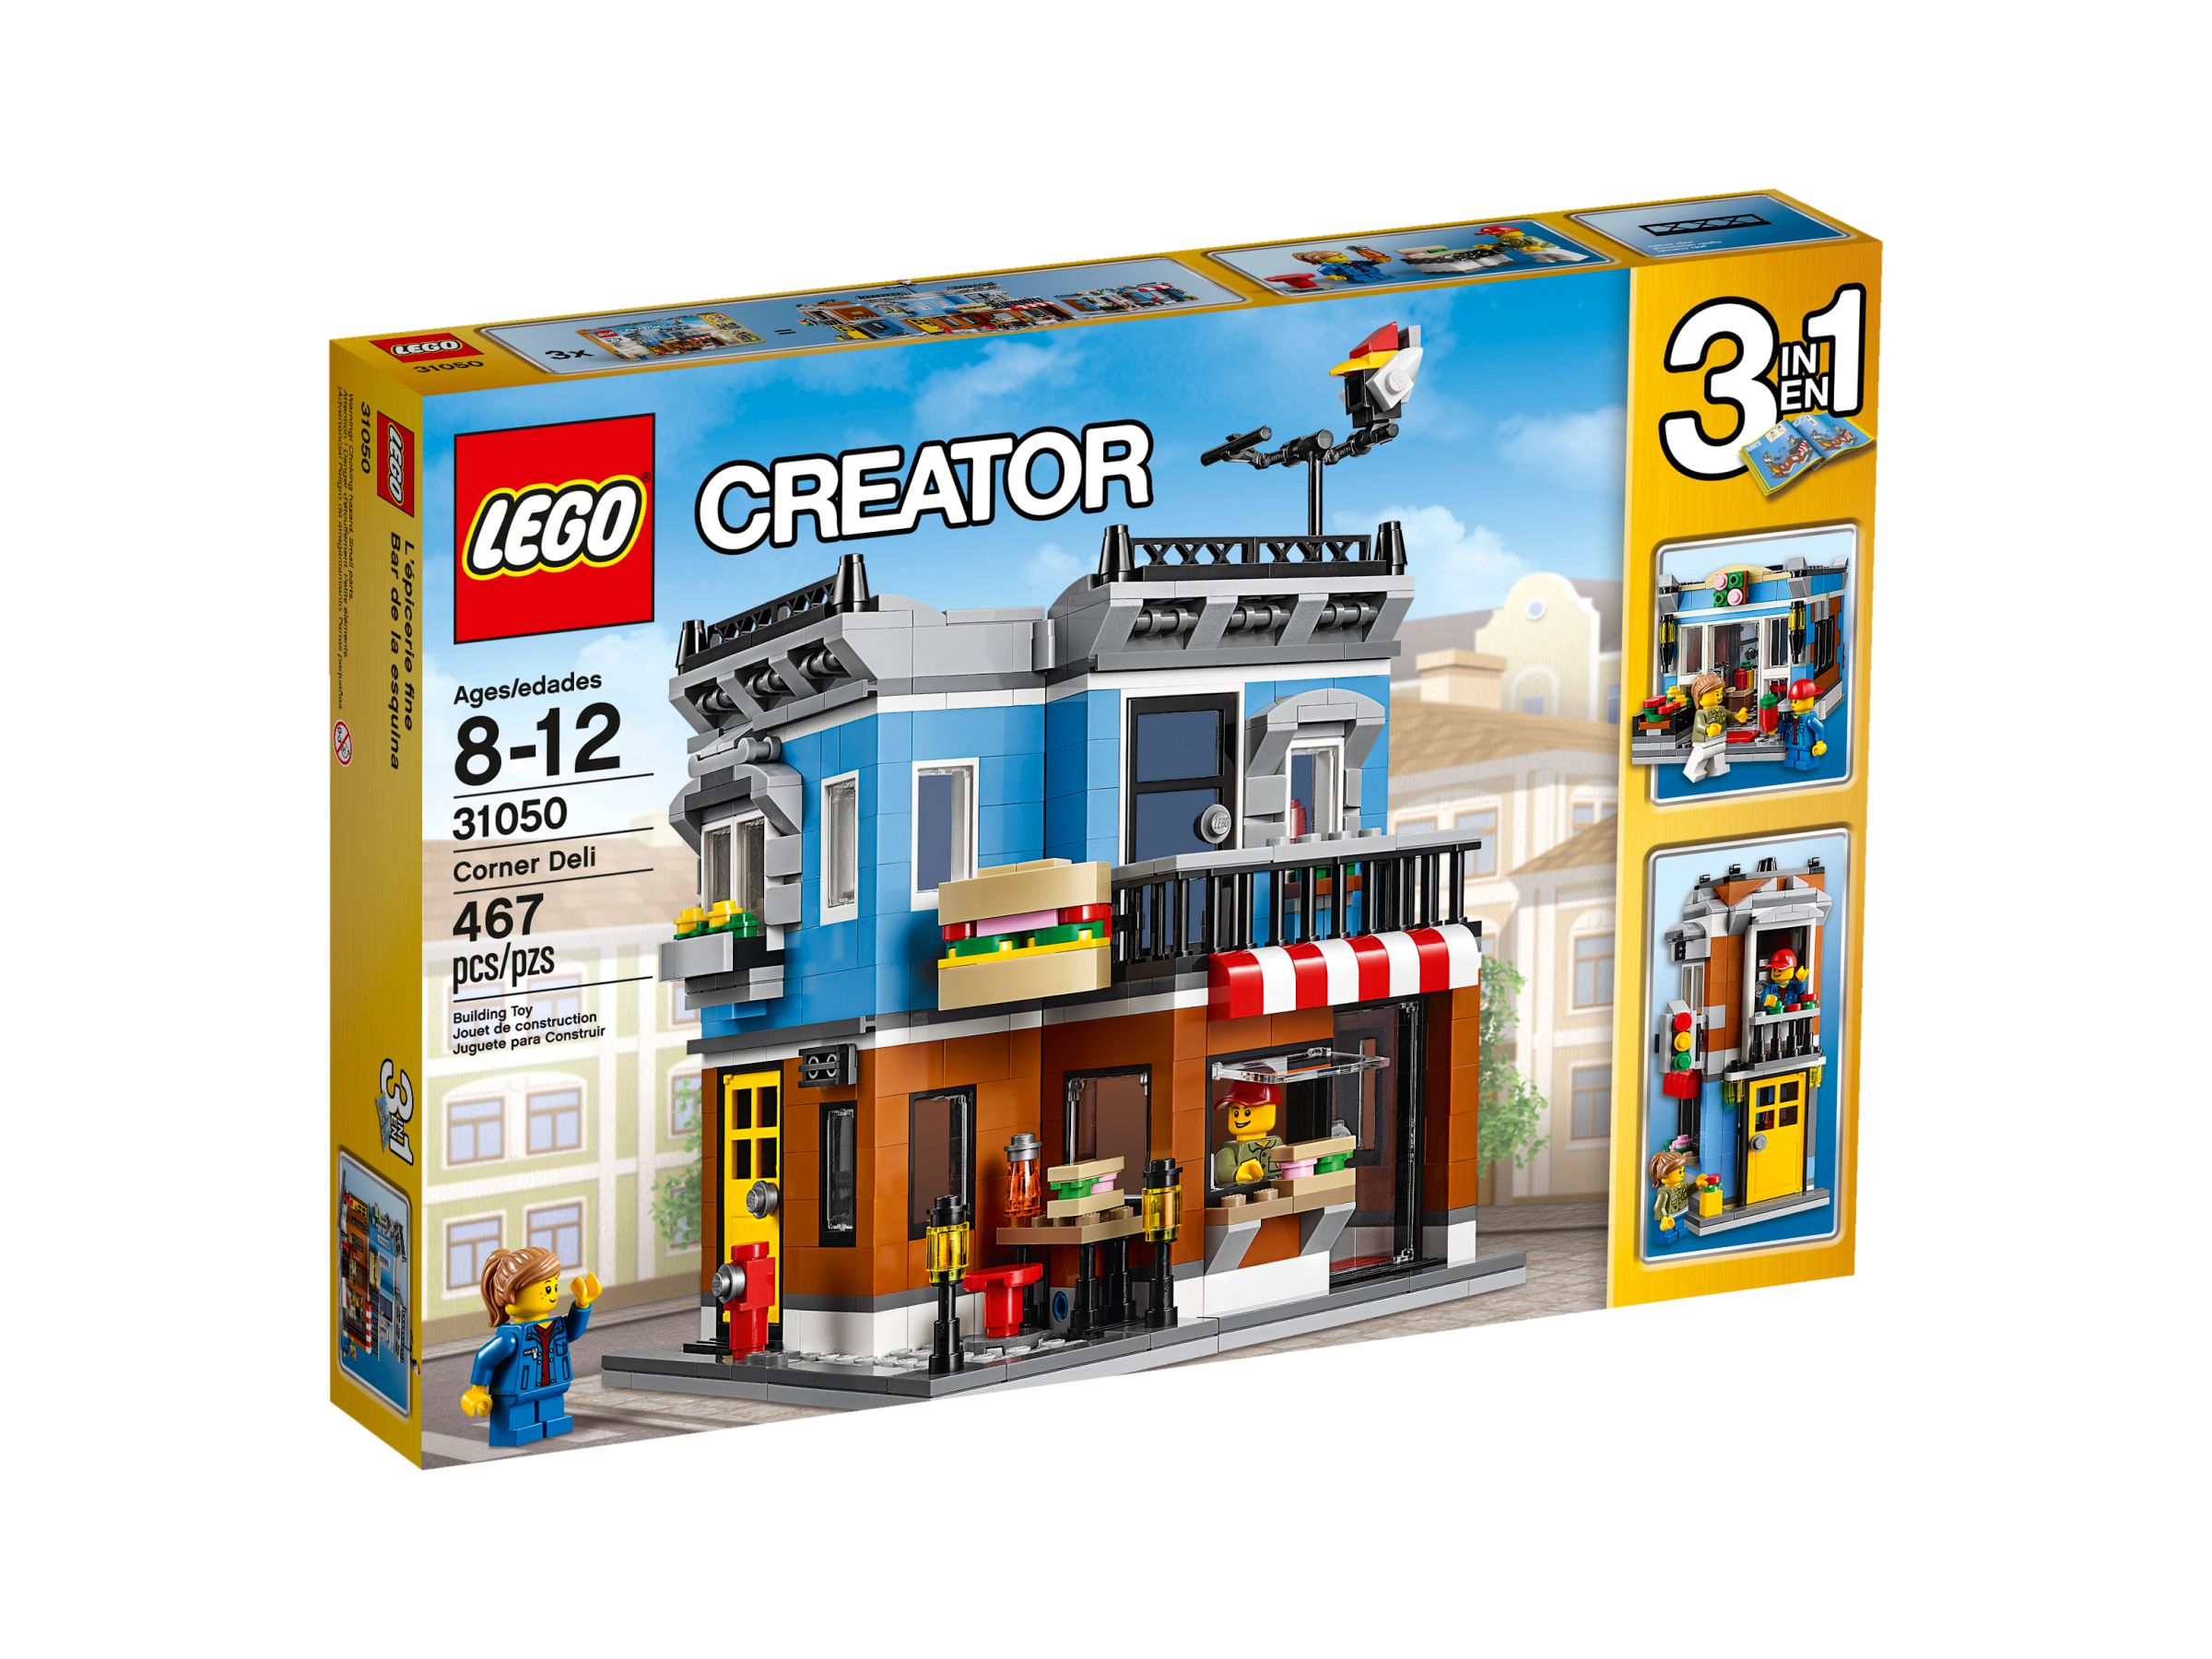 LEGO Creator 31050 Feinkostladen LEGO_31050_alt1.jpg